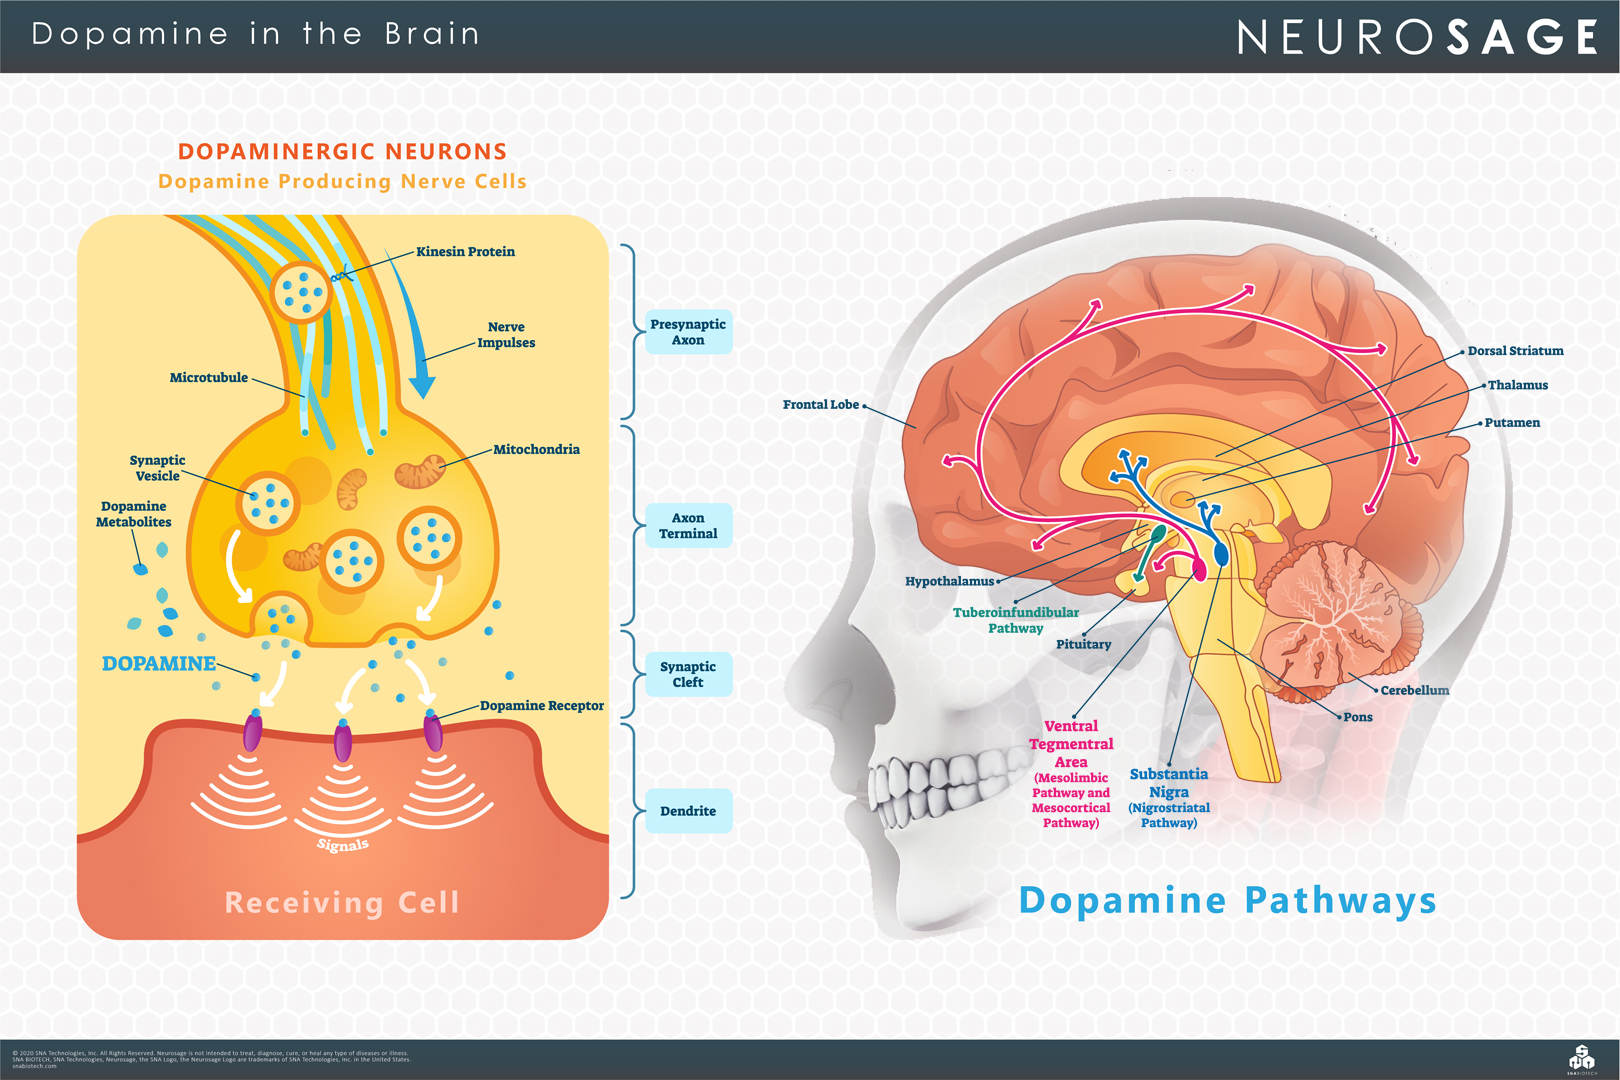 Dopamine in the Brain